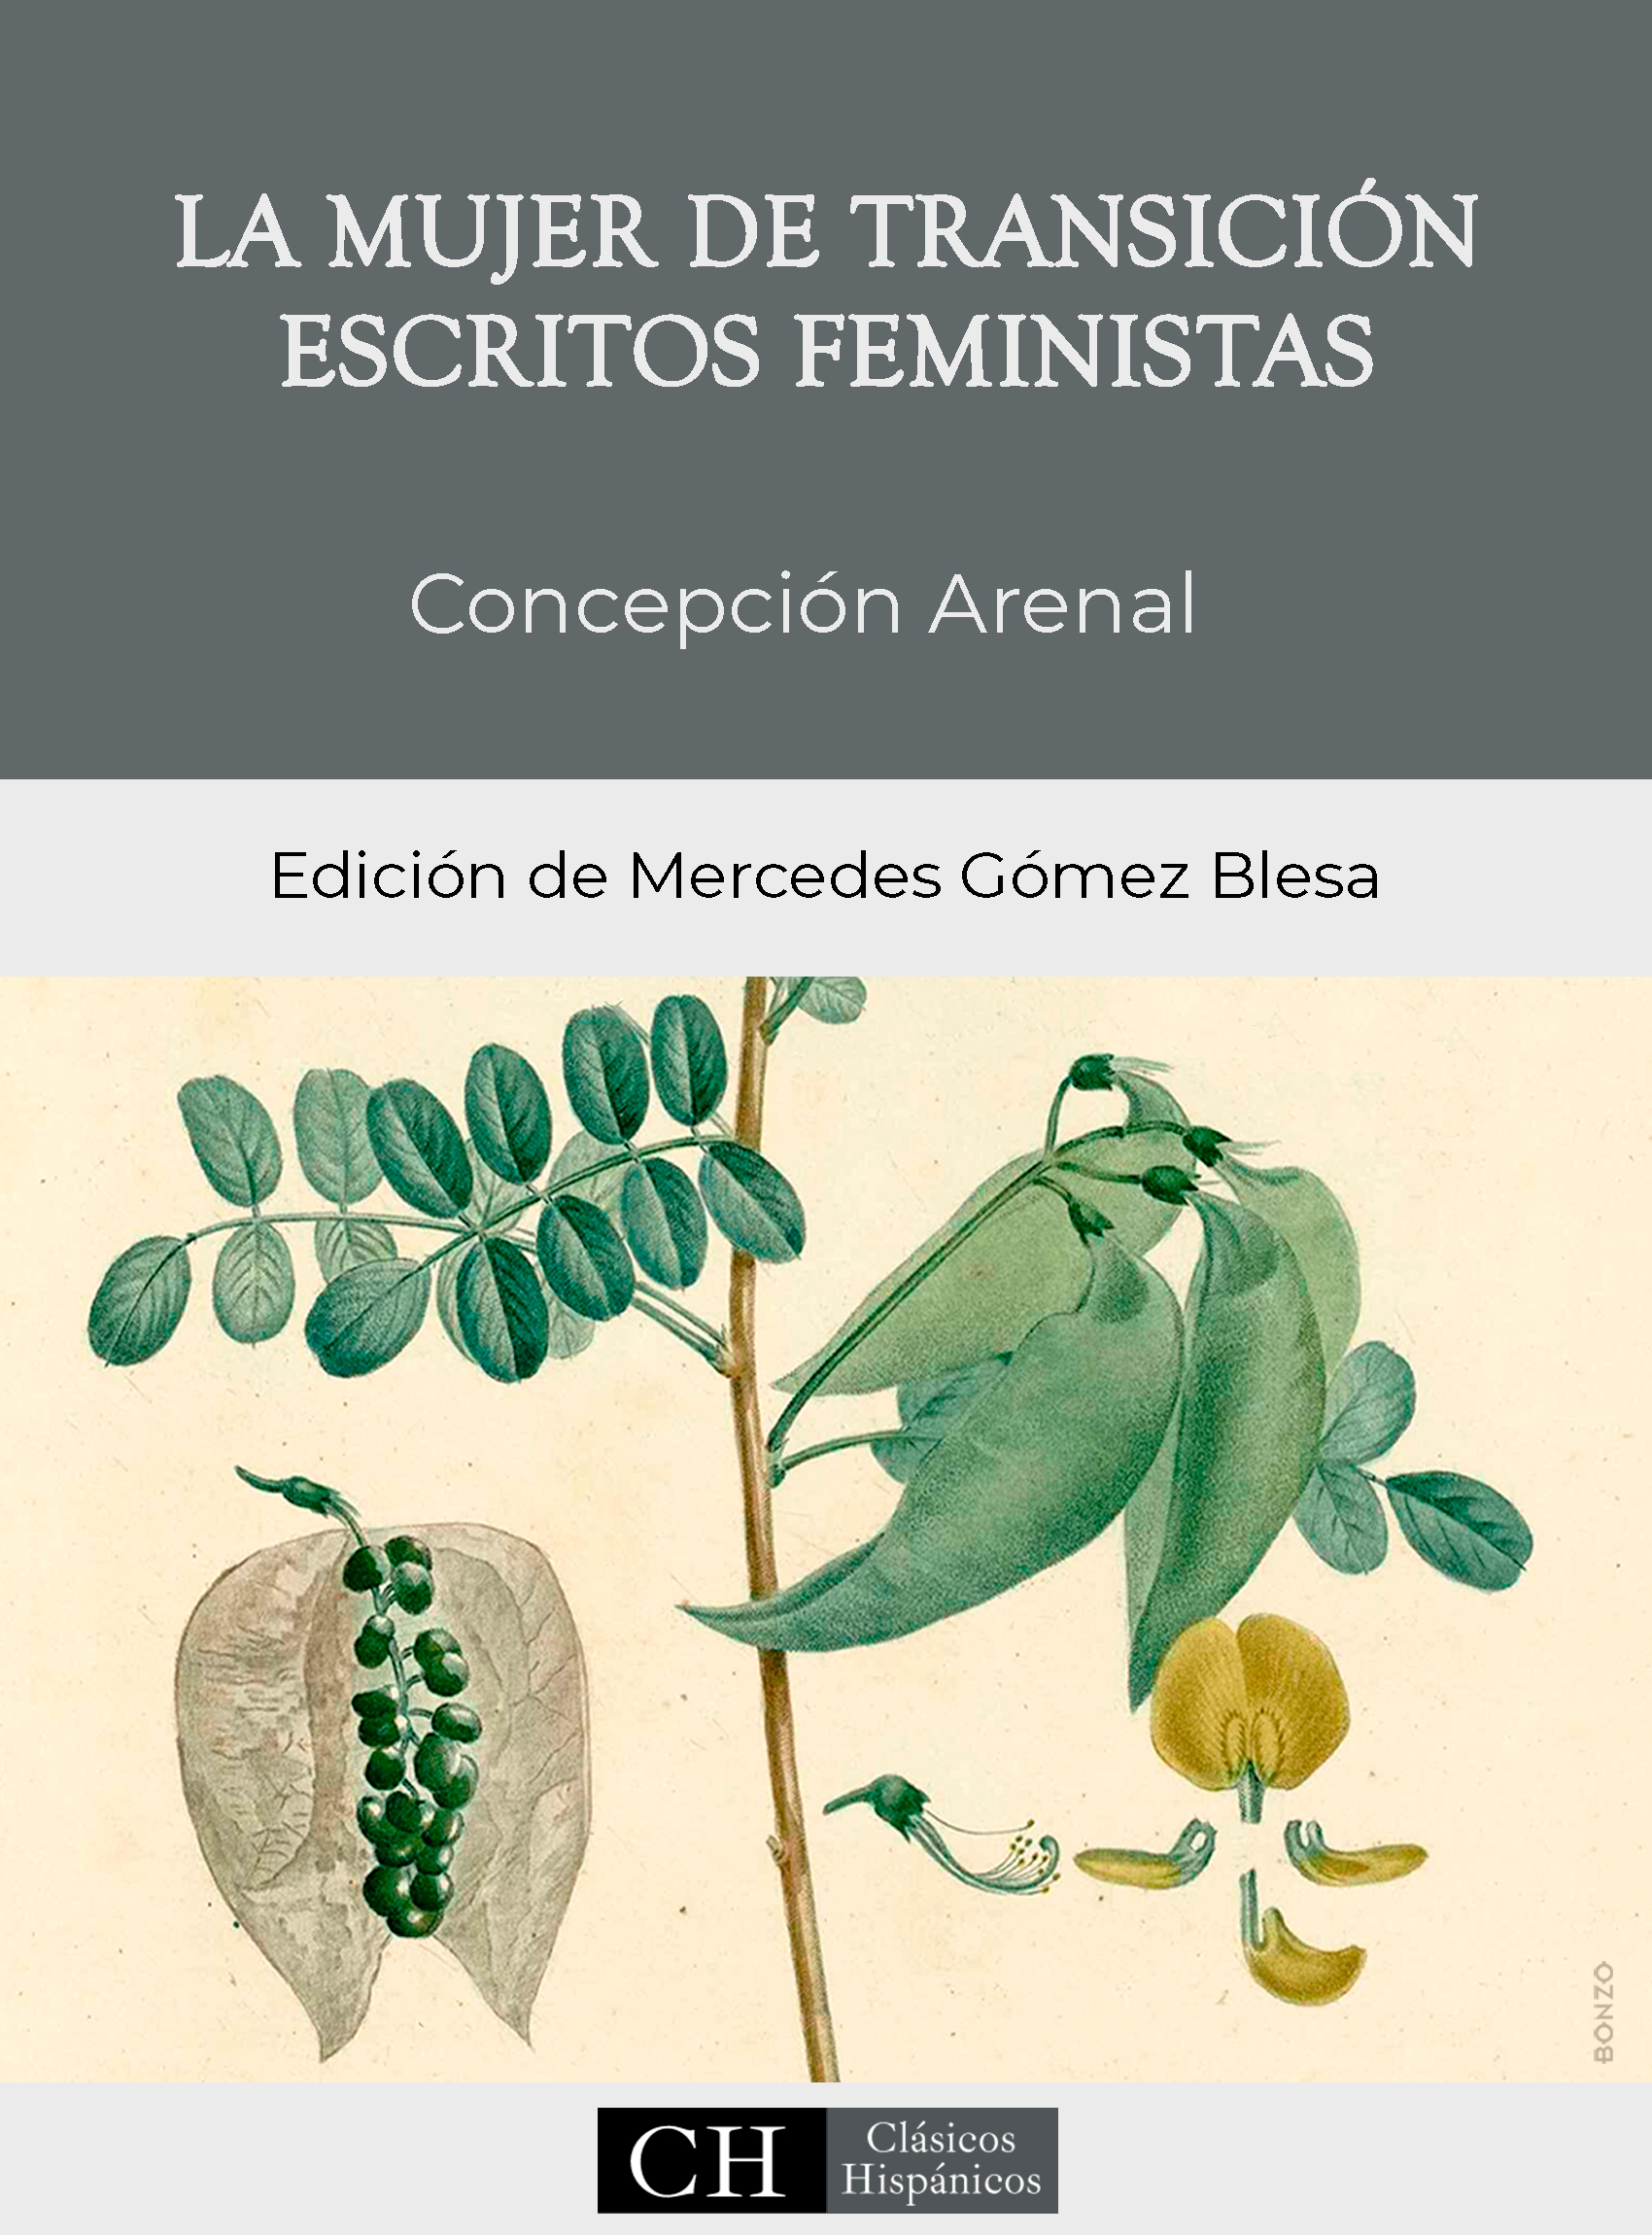 Imagen de portada del libro La mujer de transición. Escritos feministas